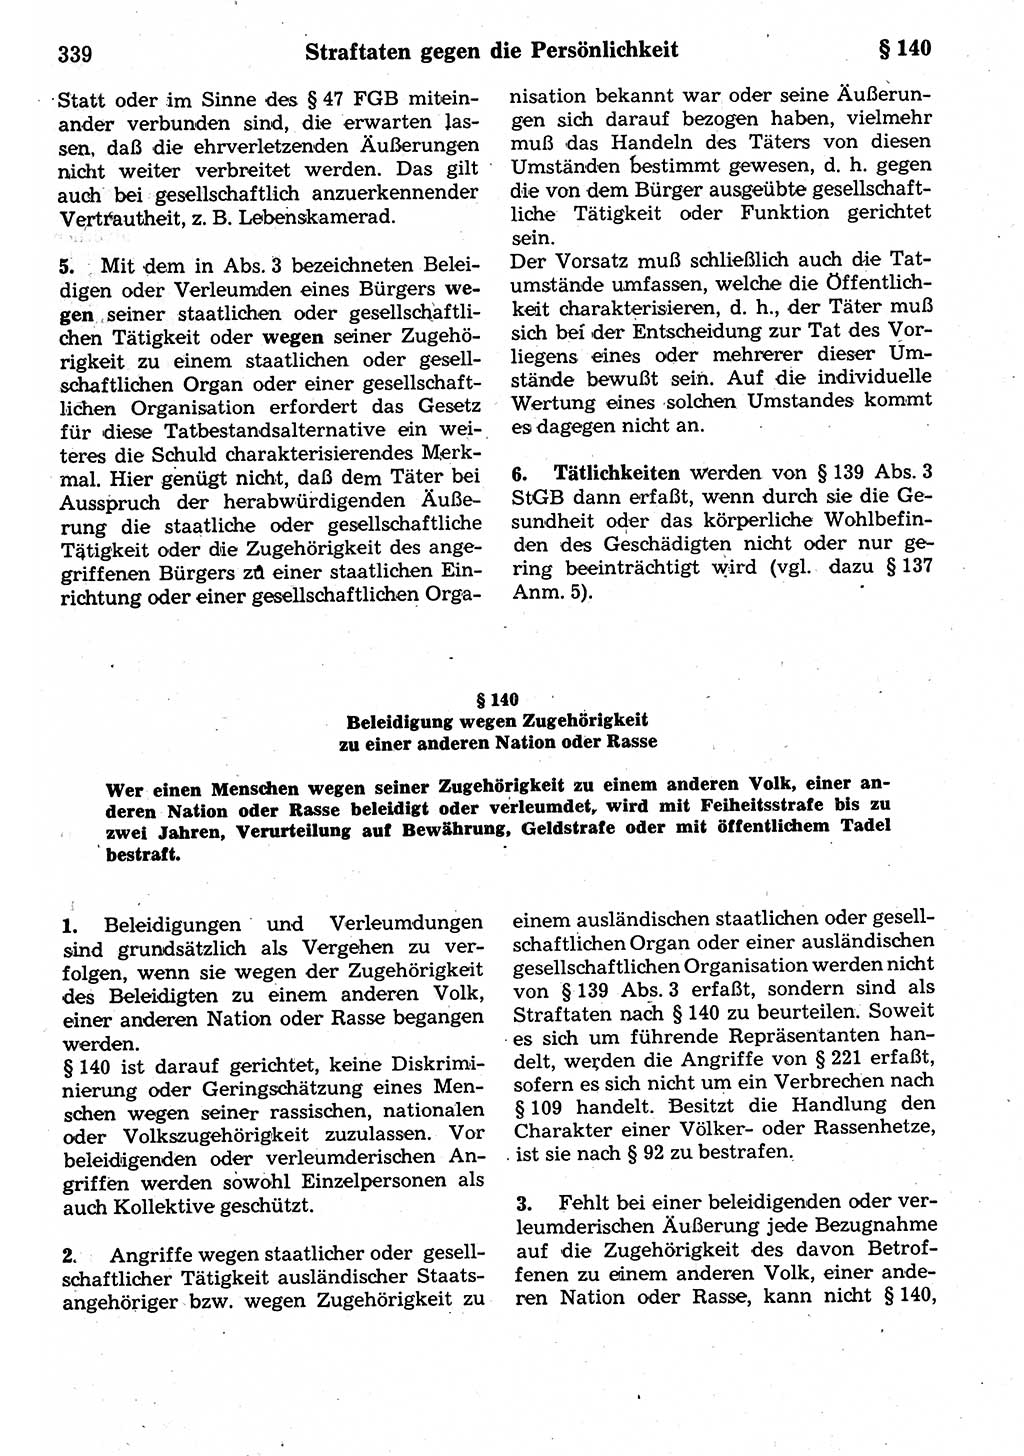 Strafrecht der Deutschen Demokratischen Republik (DDR), Kommentar zum Strafgesetzbuch (StGB) 1987, Seite 339 (Strafr. DDR Komm. StGB 1987, S. 339)